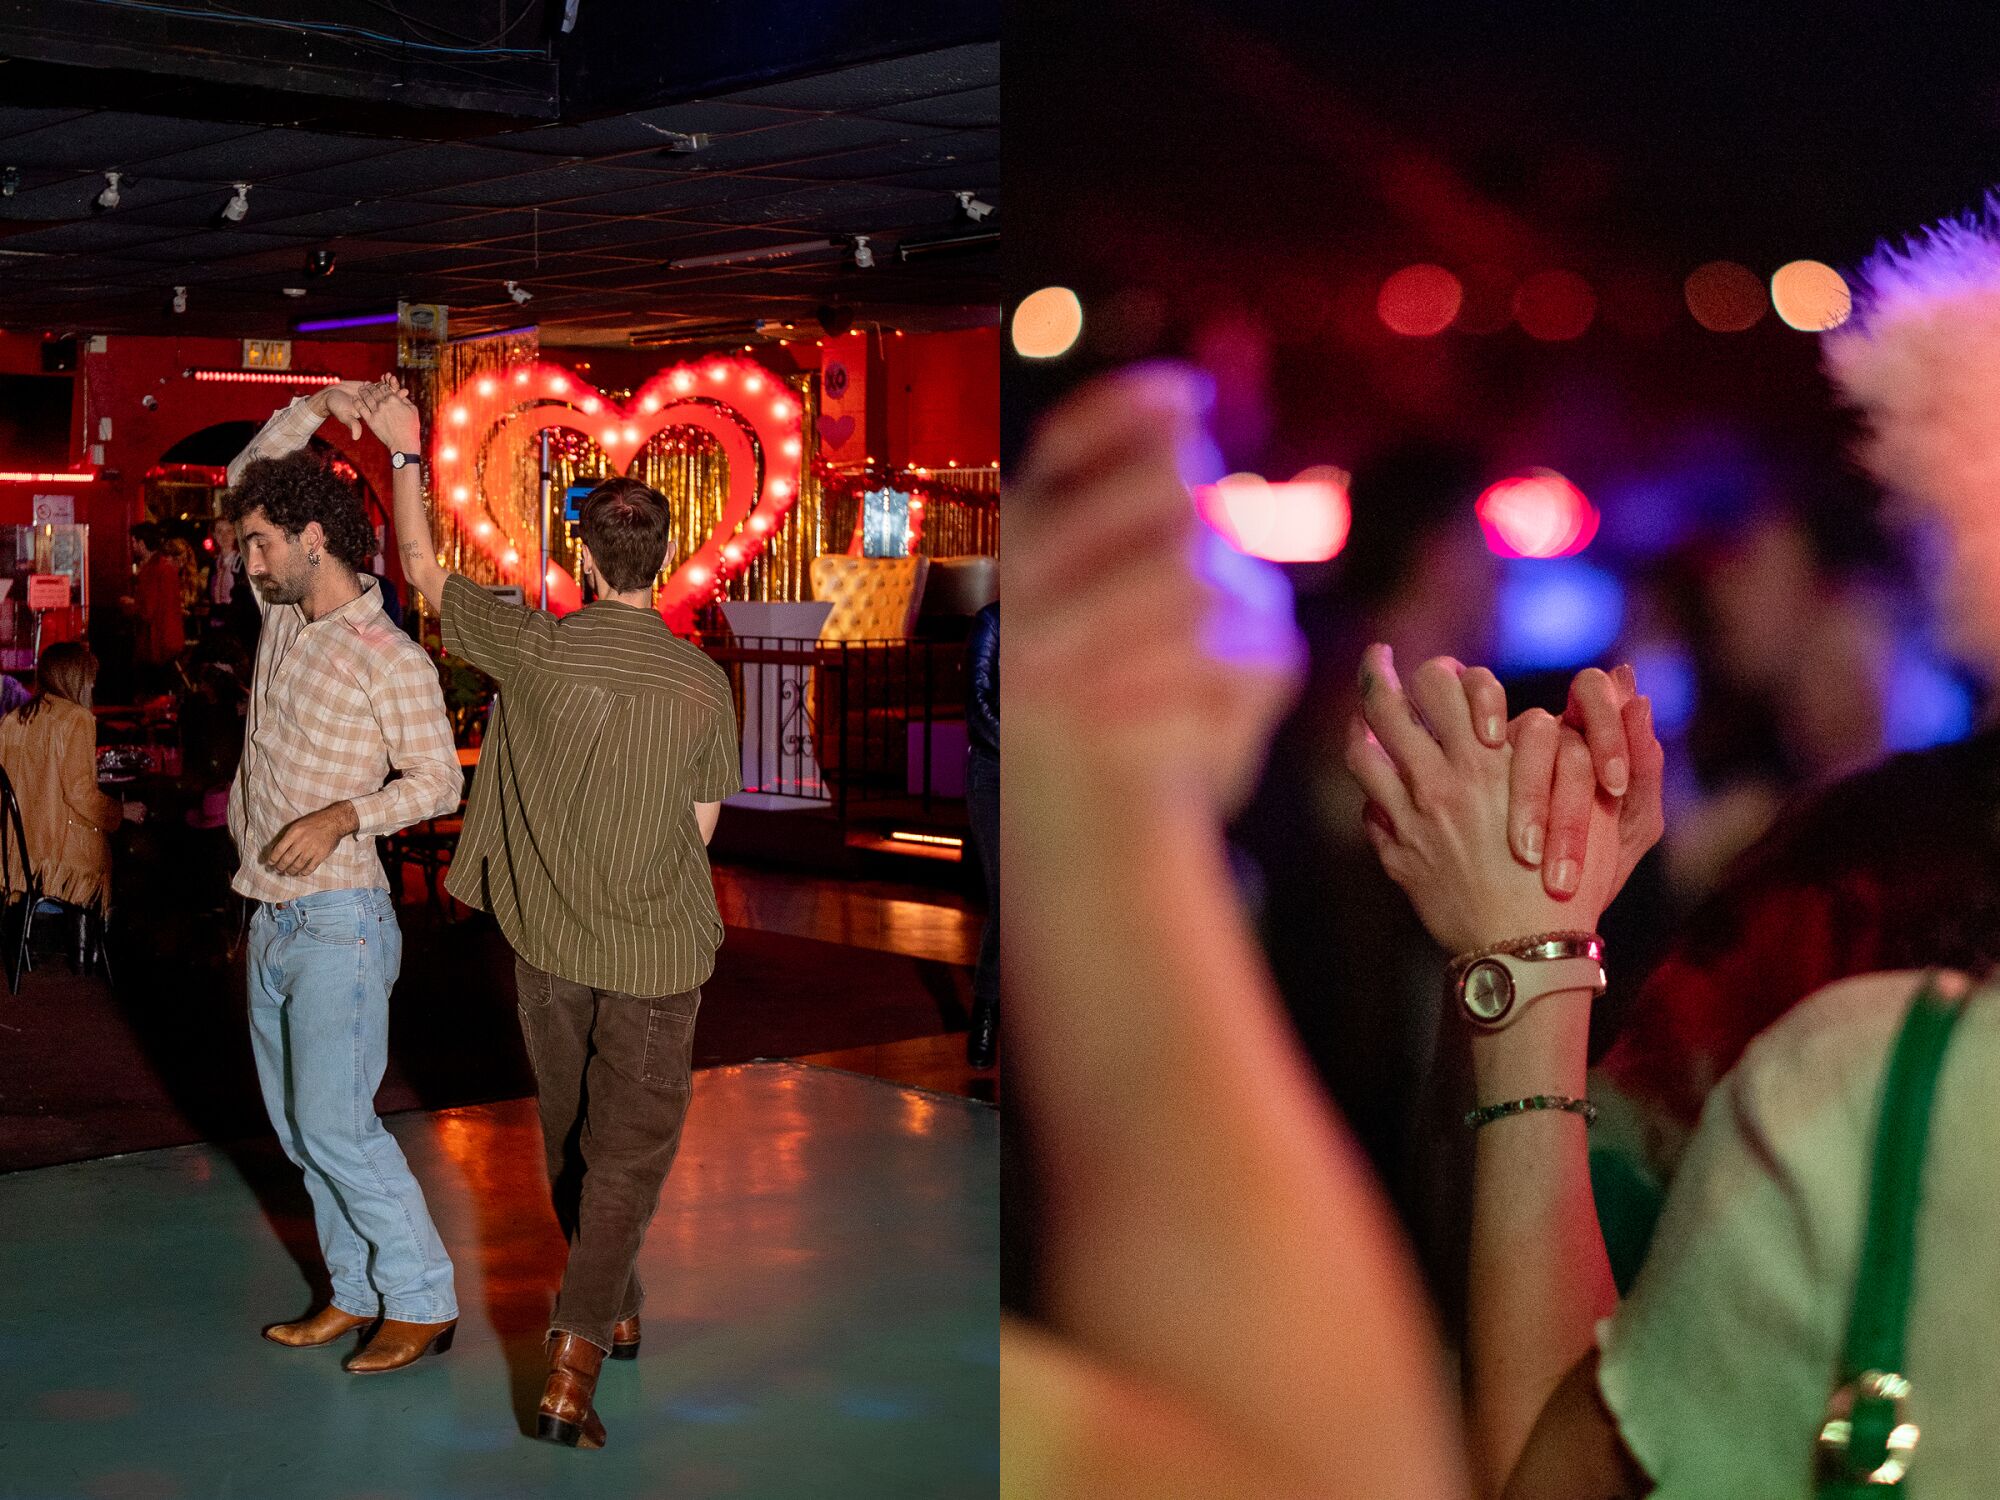 Deux photos côte à côte, l'une montrant deux personnes dansant et l'autre un gros plan de deux personnes se tenant la main.